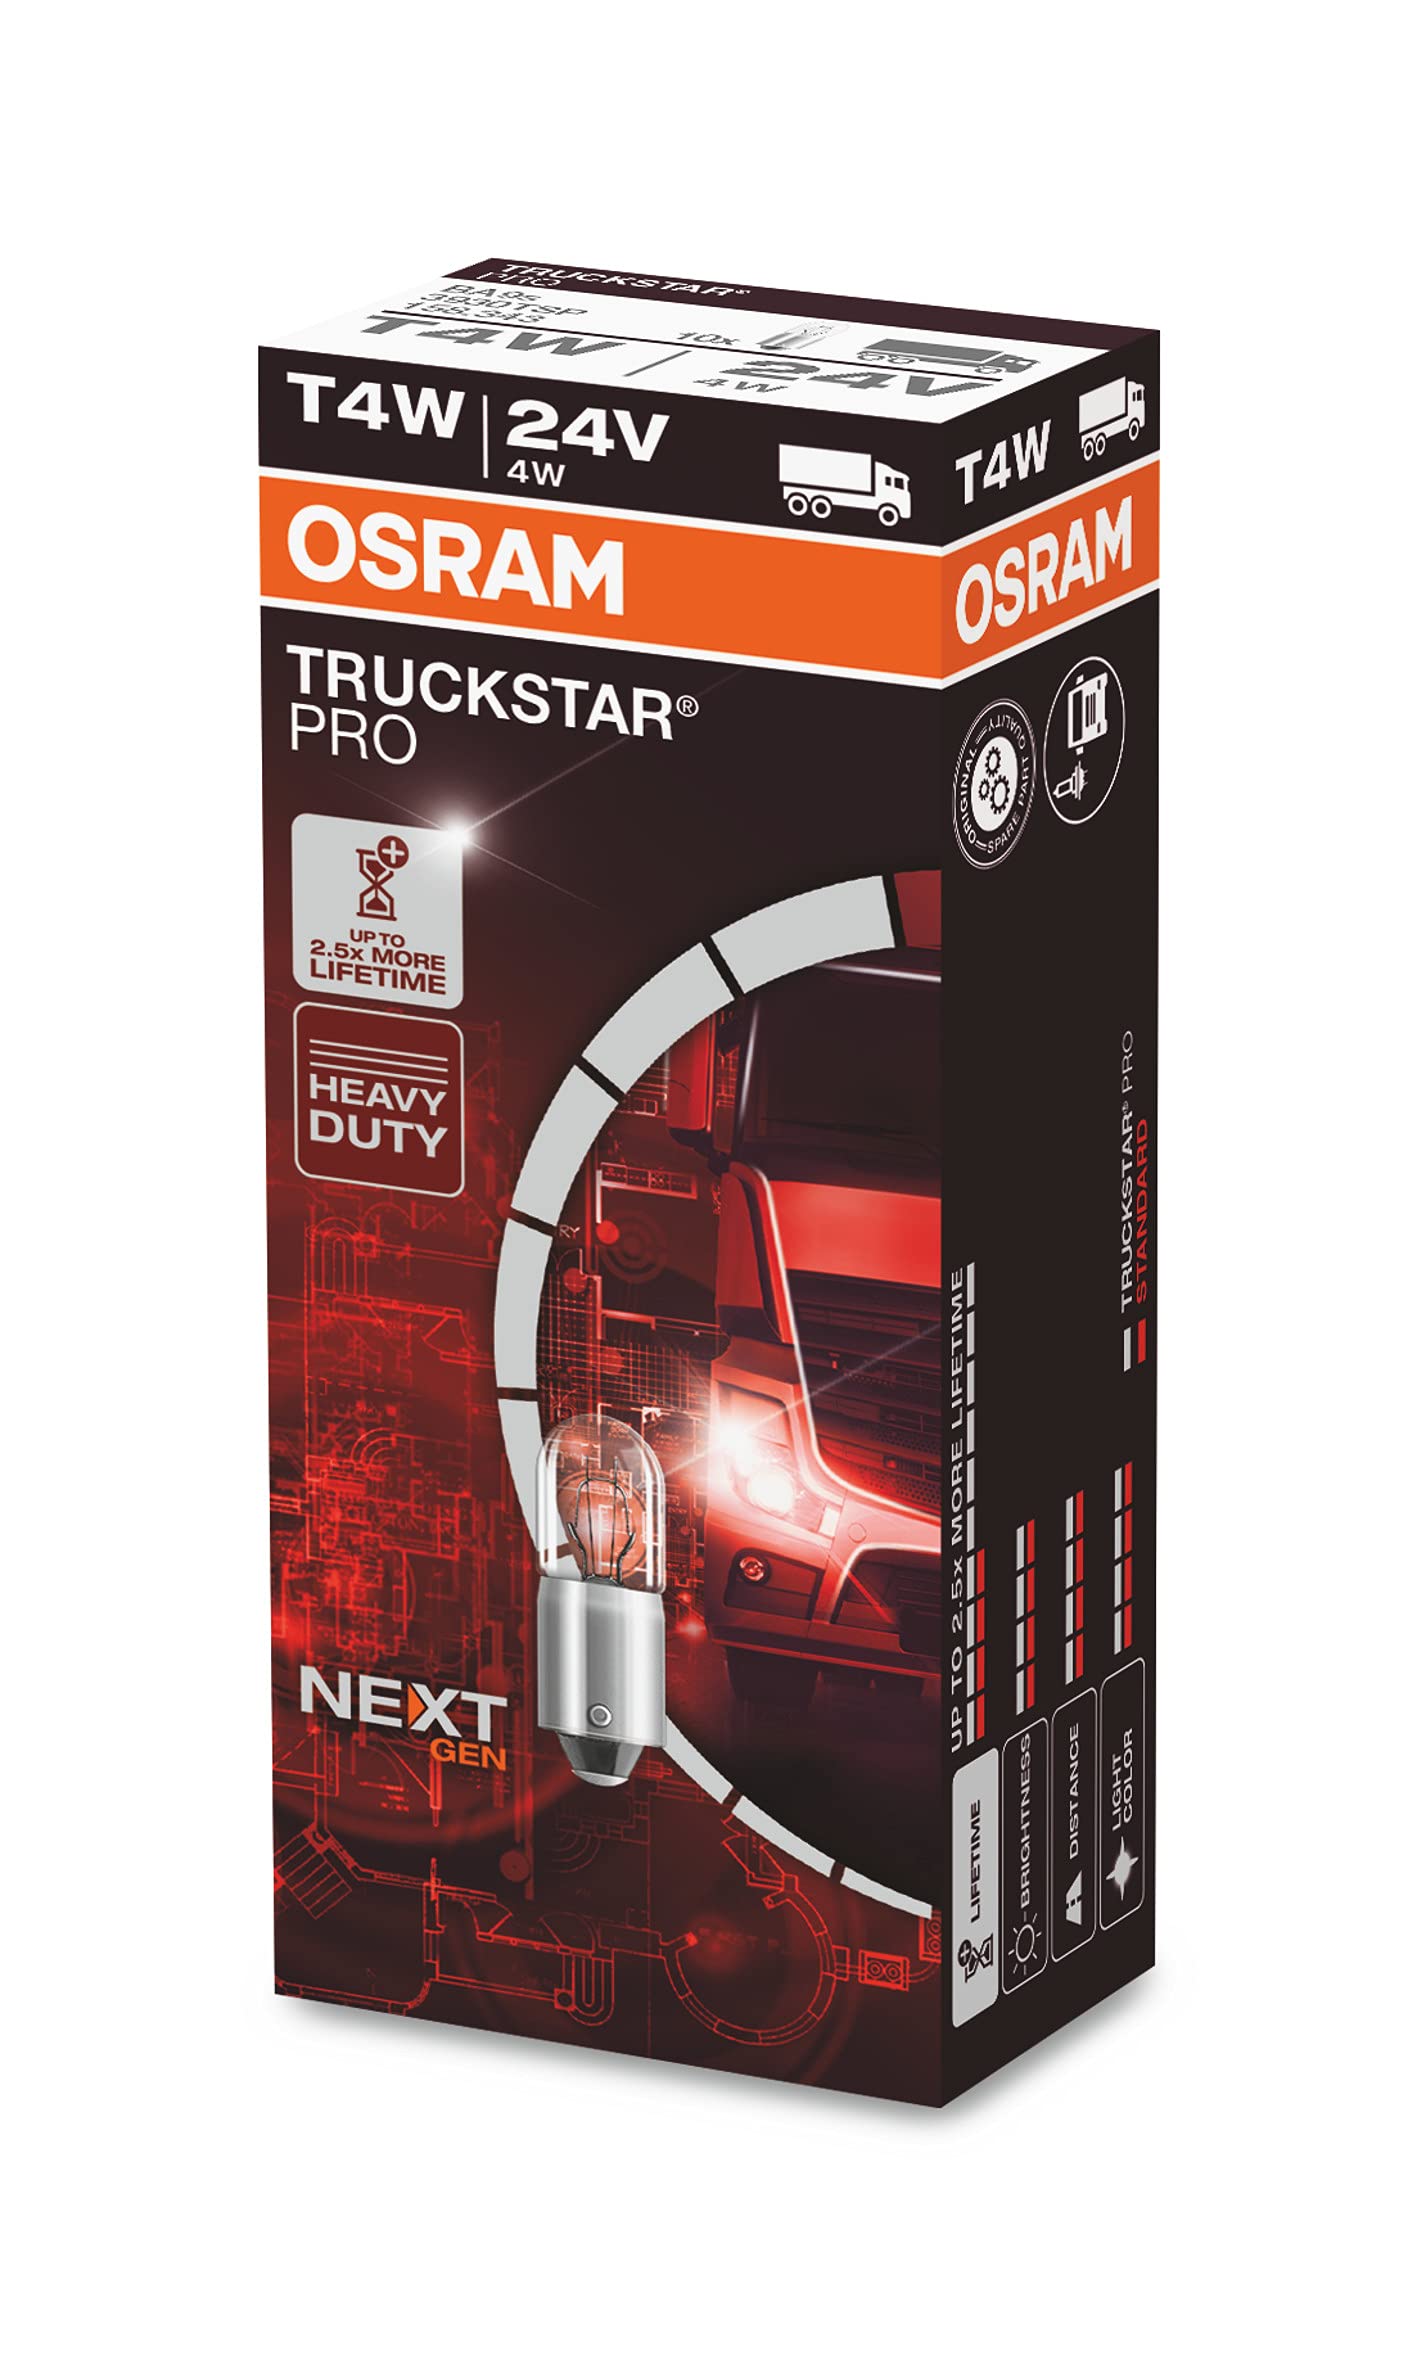 Osram TRUCKSTAR® PRO T4W, 120% mehr Helligkeit, Halogen-Signallampe, 3930TSP, 24V LKW Lampe, Faltschachtel (10 Lampen) von Osram